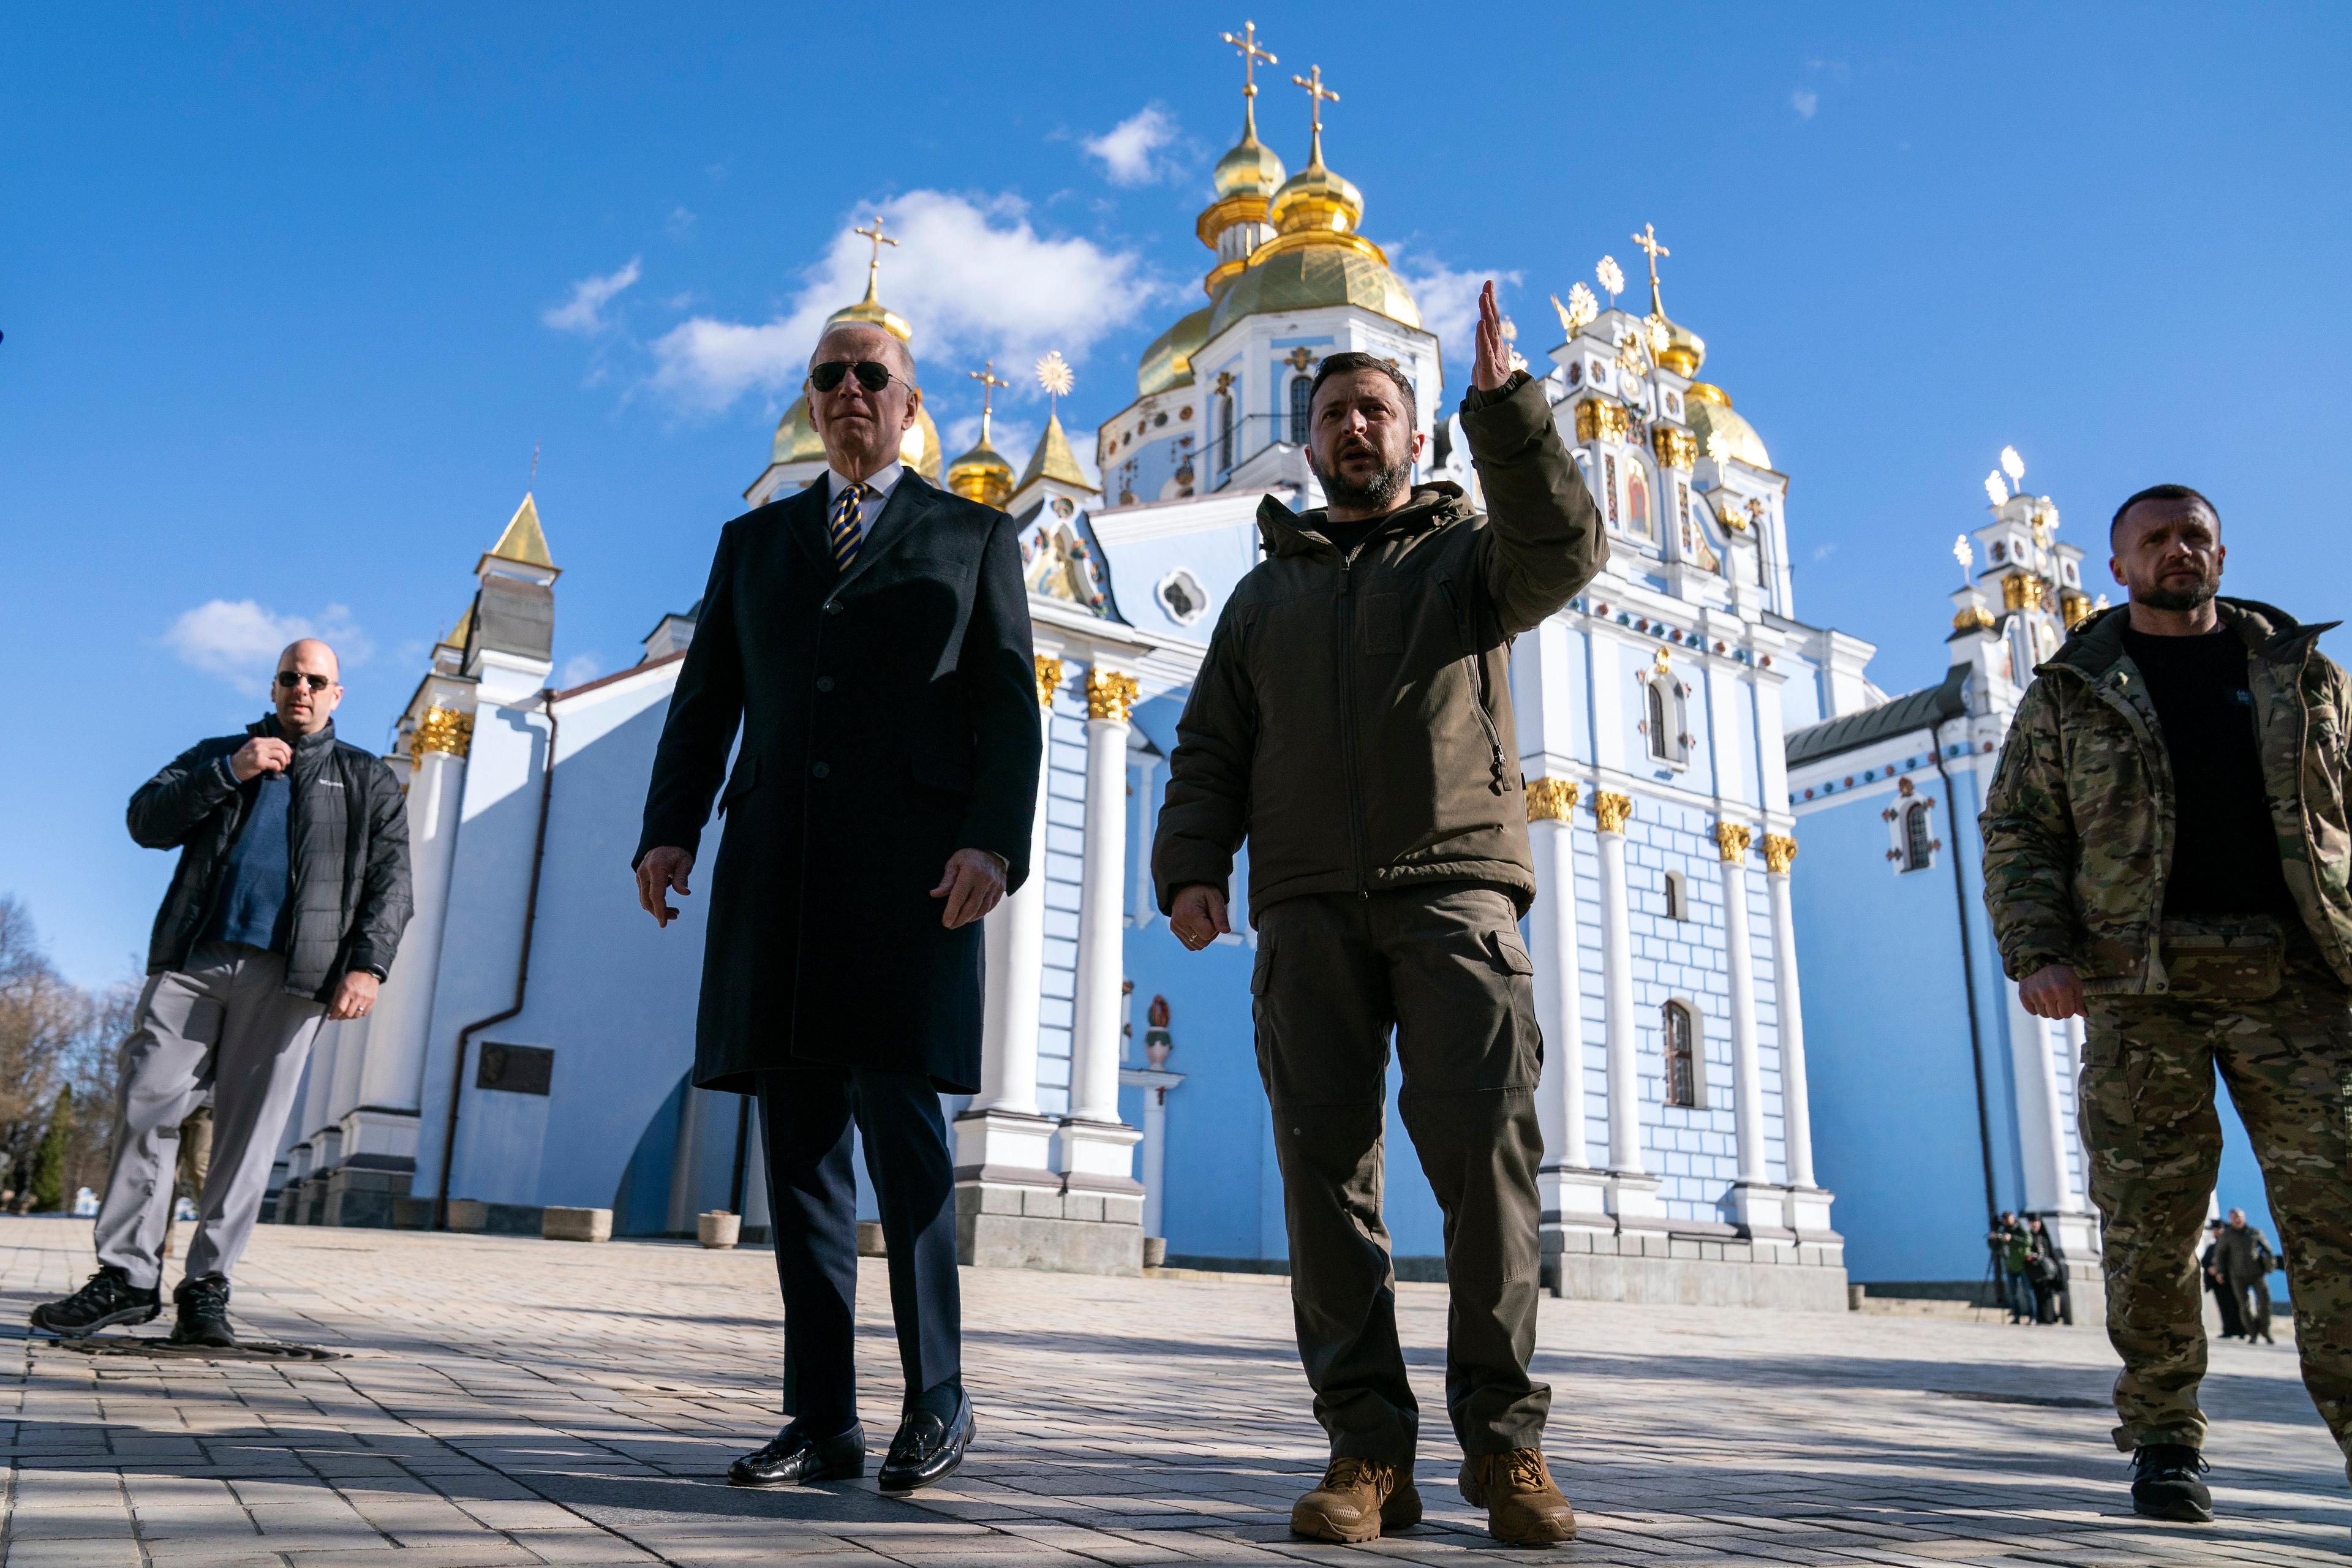 dwaj mężczyźni stoją na placu na tle błękitnego nieba i jasnej cerkwii ze złoconym dachem. To Joe Biden i Wołodymyr Zełenski